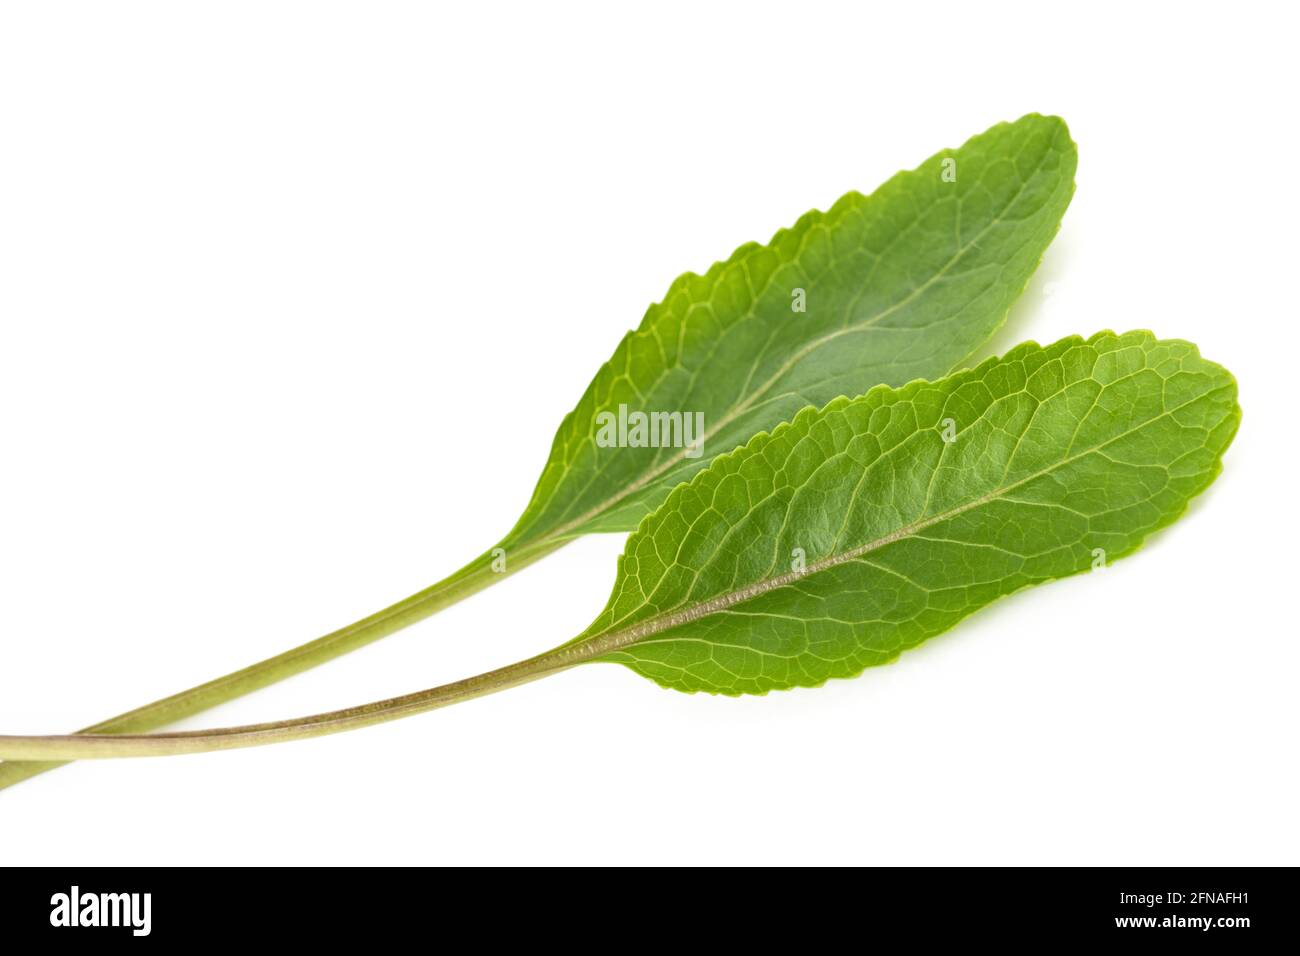 Frash young horseradish leaves isolated on white background Stock Photo